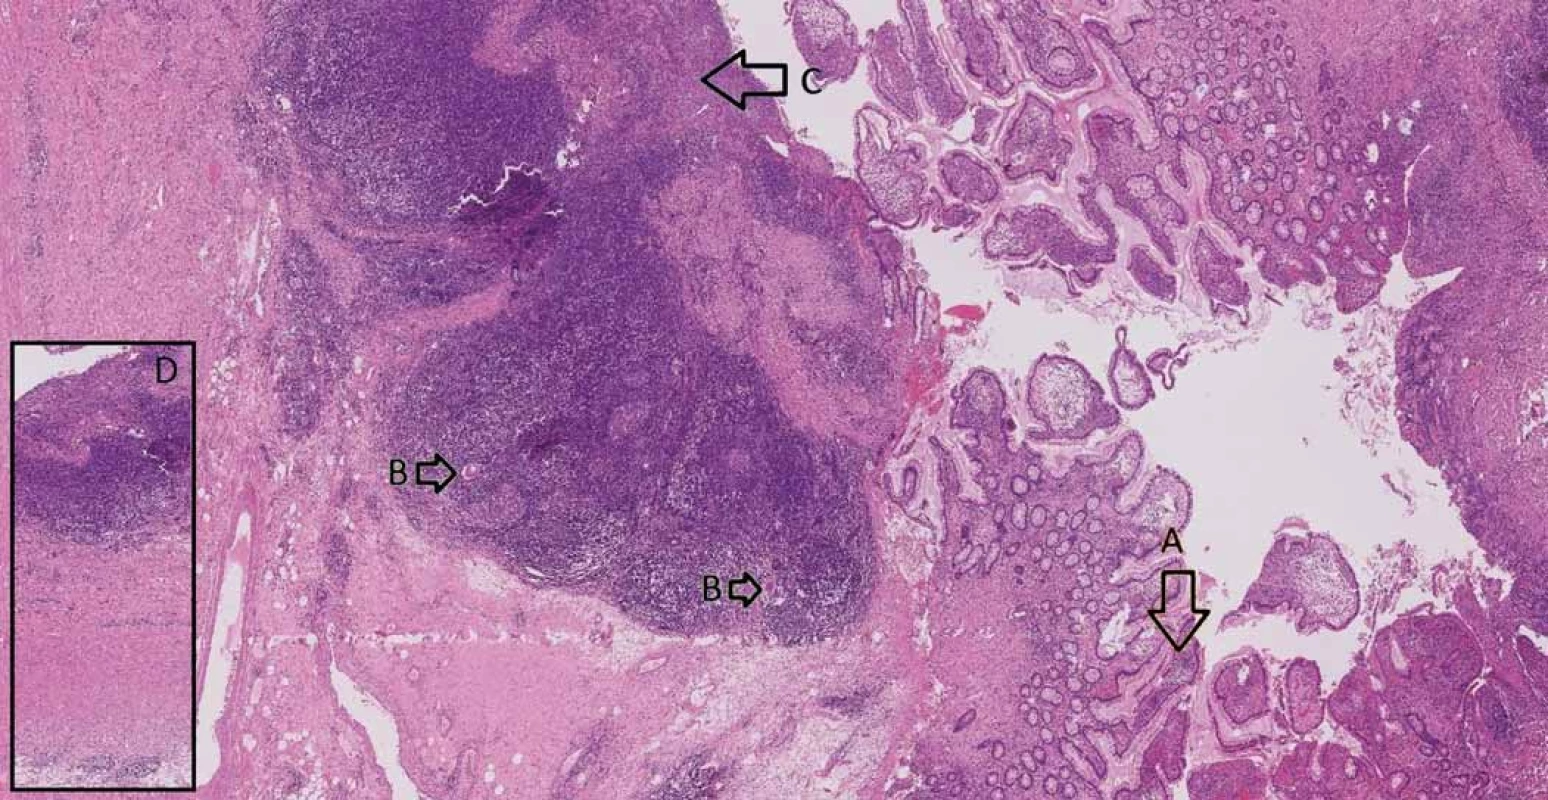 Small intestine with Crohn’s disease – A. architectural distortion of mucosa, B. giant cells, C. ulceration,
D. transmural inflammation.<br>
Obr. 3. Tenké střevo postižené Crohnovou nemocí – A. distorze architektoniky sliznice, B. mnohojaderné buňky, C. ulcerace,
D. transmurální zánět.